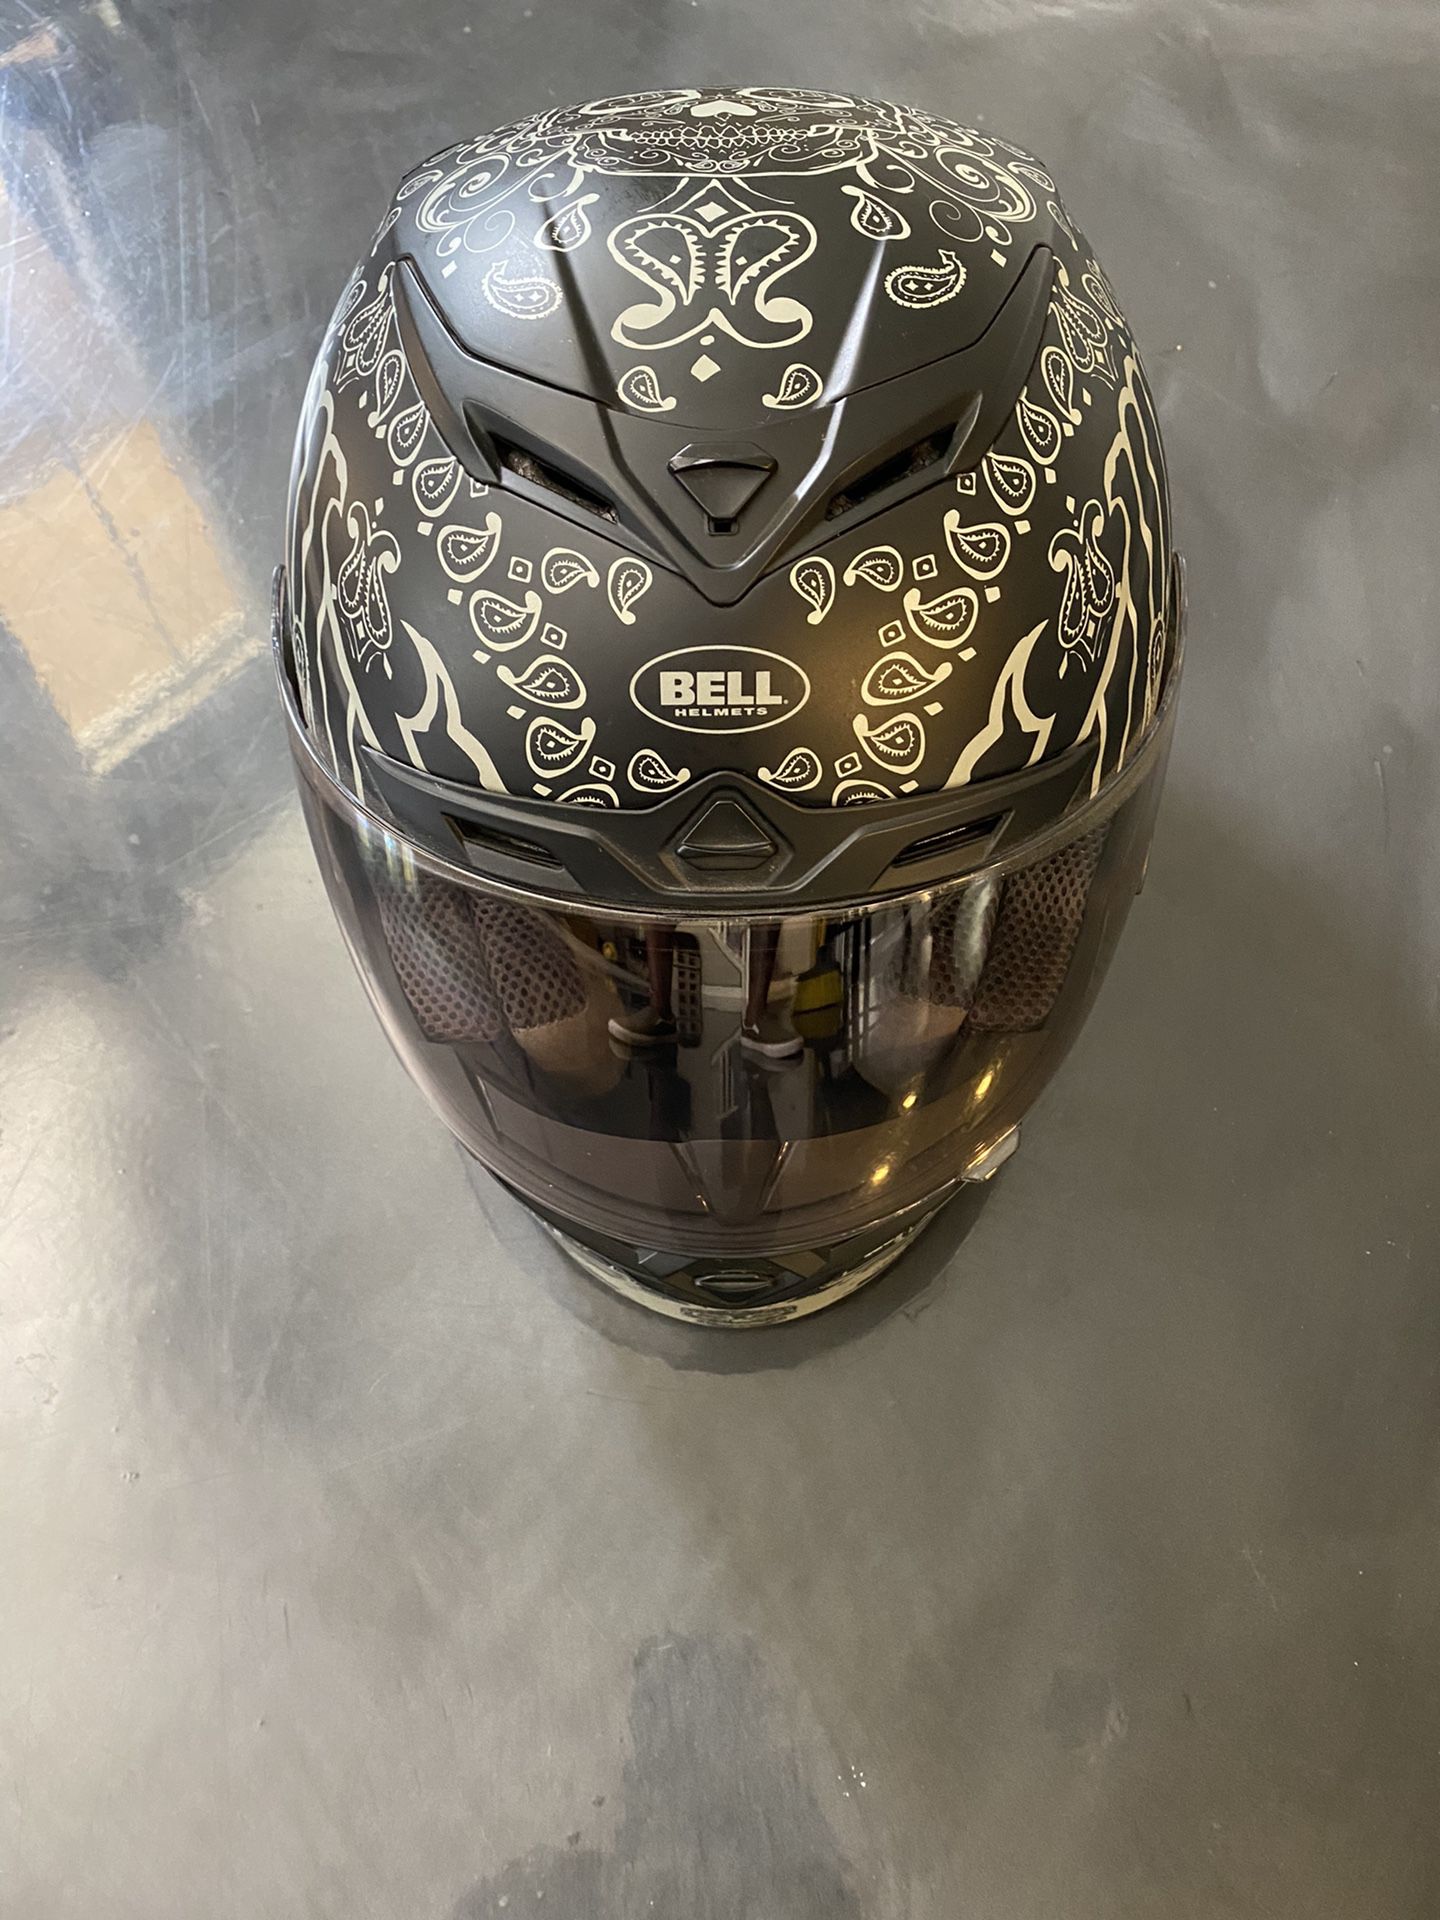 Bell motorcycle helmet with transition visor. Helmet/ Motorcycle